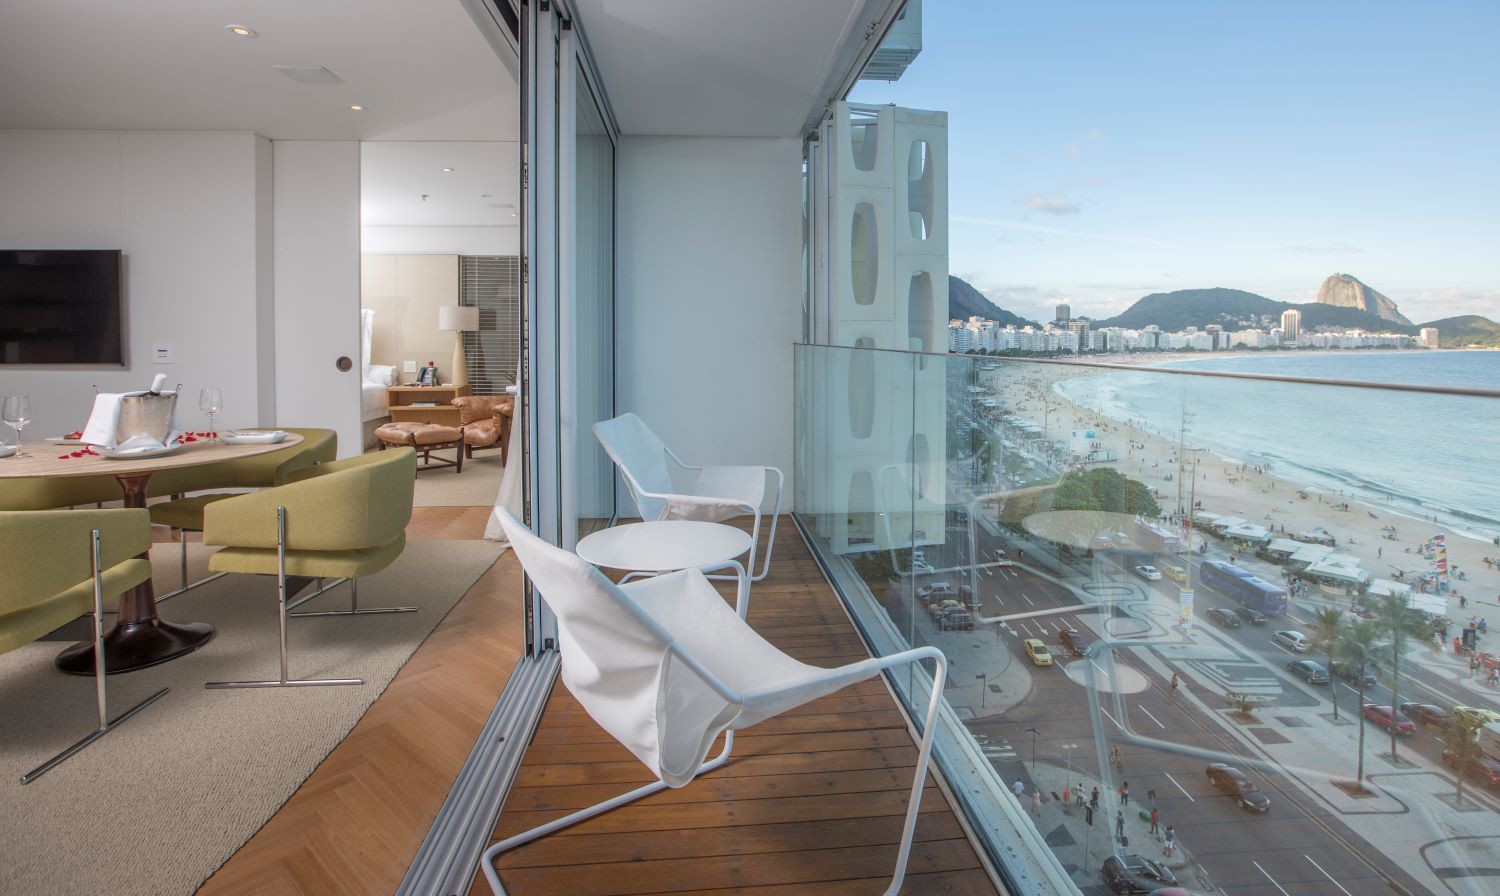 Brazil trip april 2015. Hotel in Rio de Janeiro, DrZauro